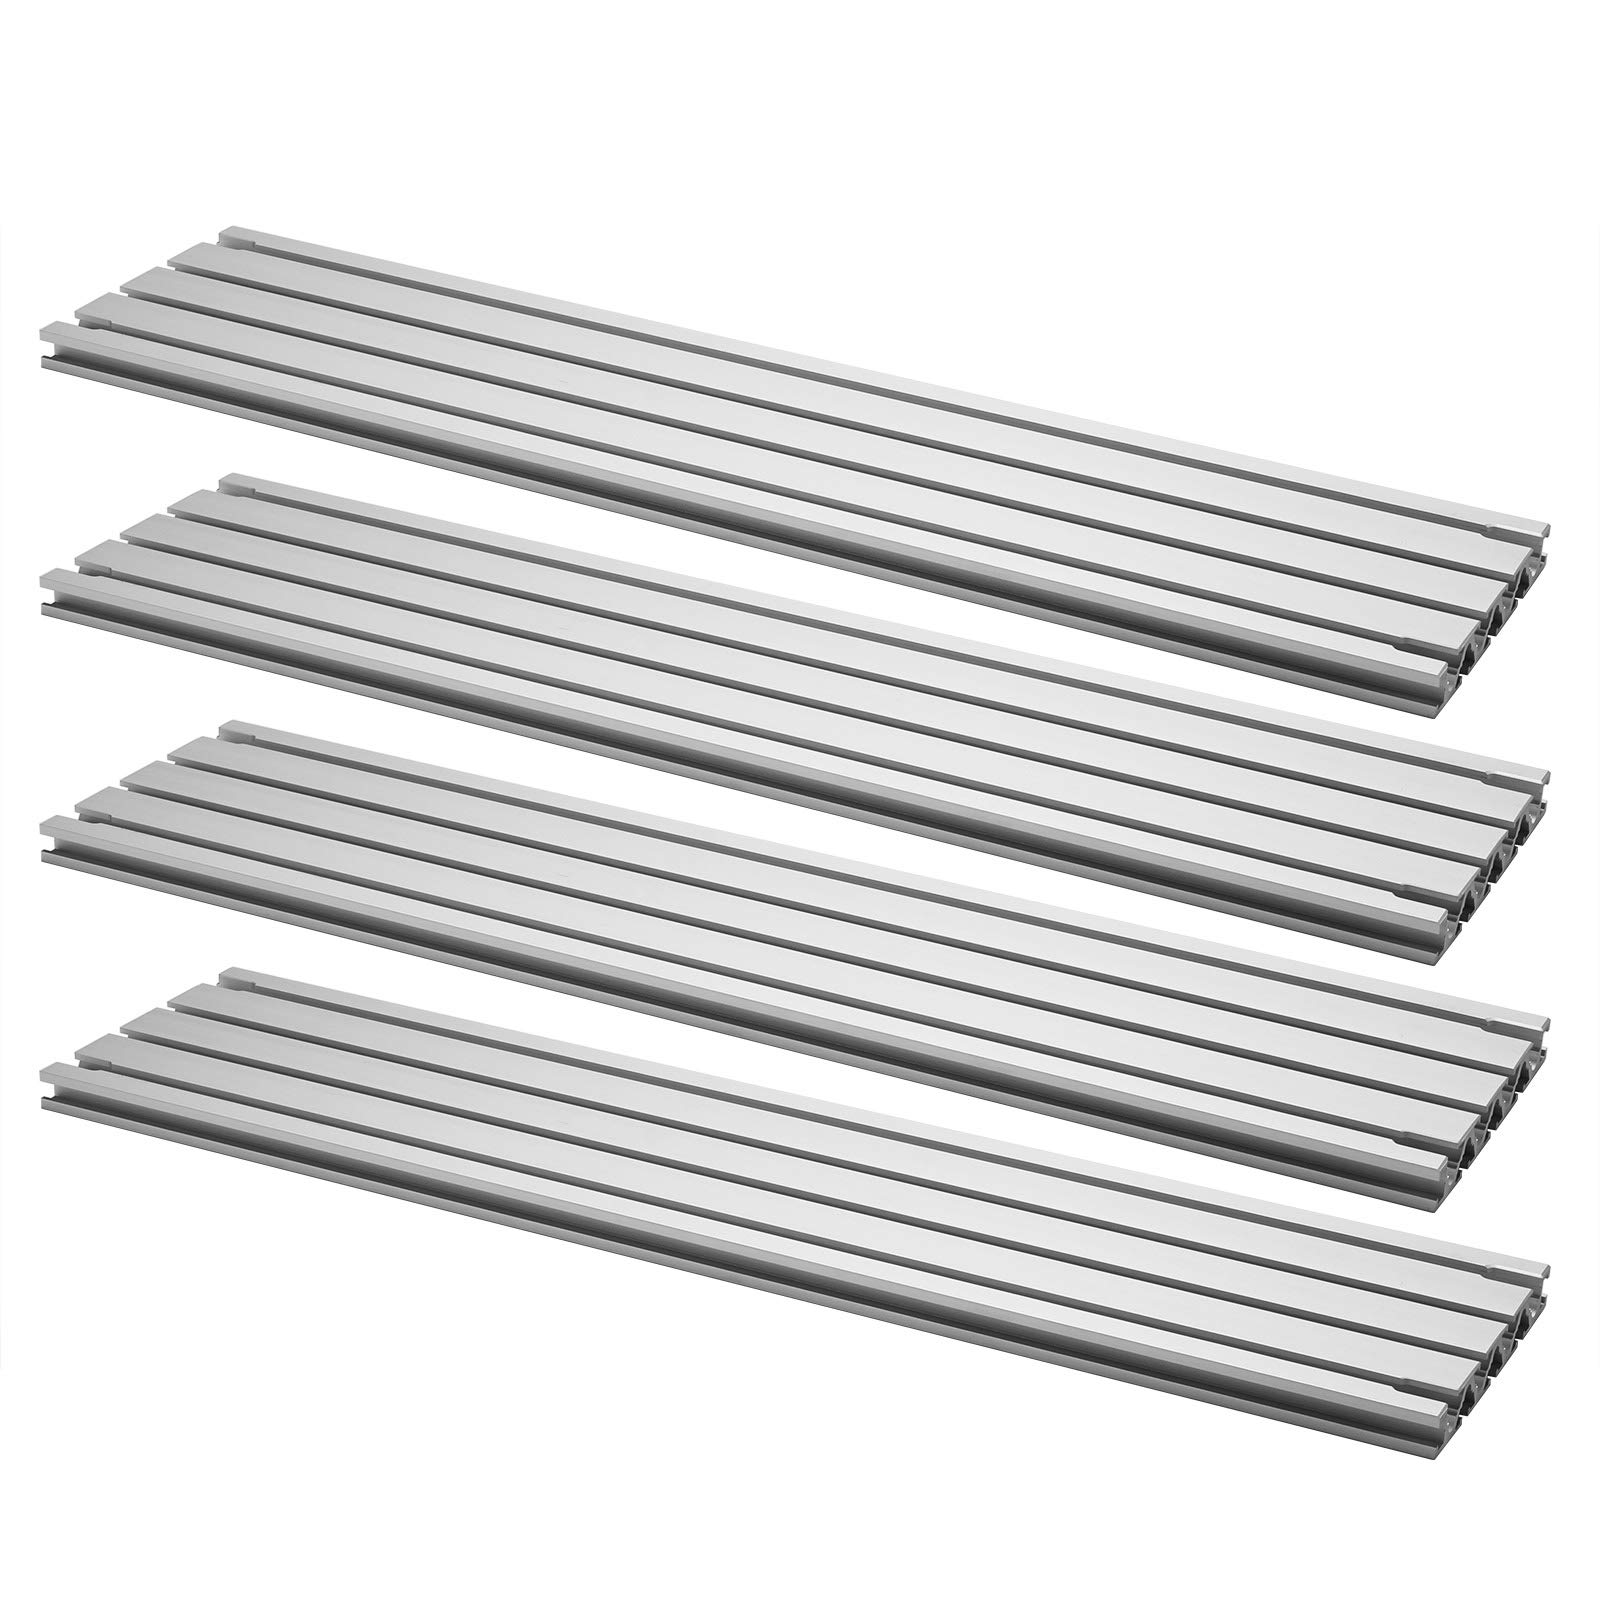 Genmitsu 4stk. T-Slot CNC-Arbeitsoberfläche aus Aluminium für CNC-Fräsmaschine PROVerXL 4030, 51 x 12 x 0,8cm (20''x 4,7''x 0,3'') von Genmitsu